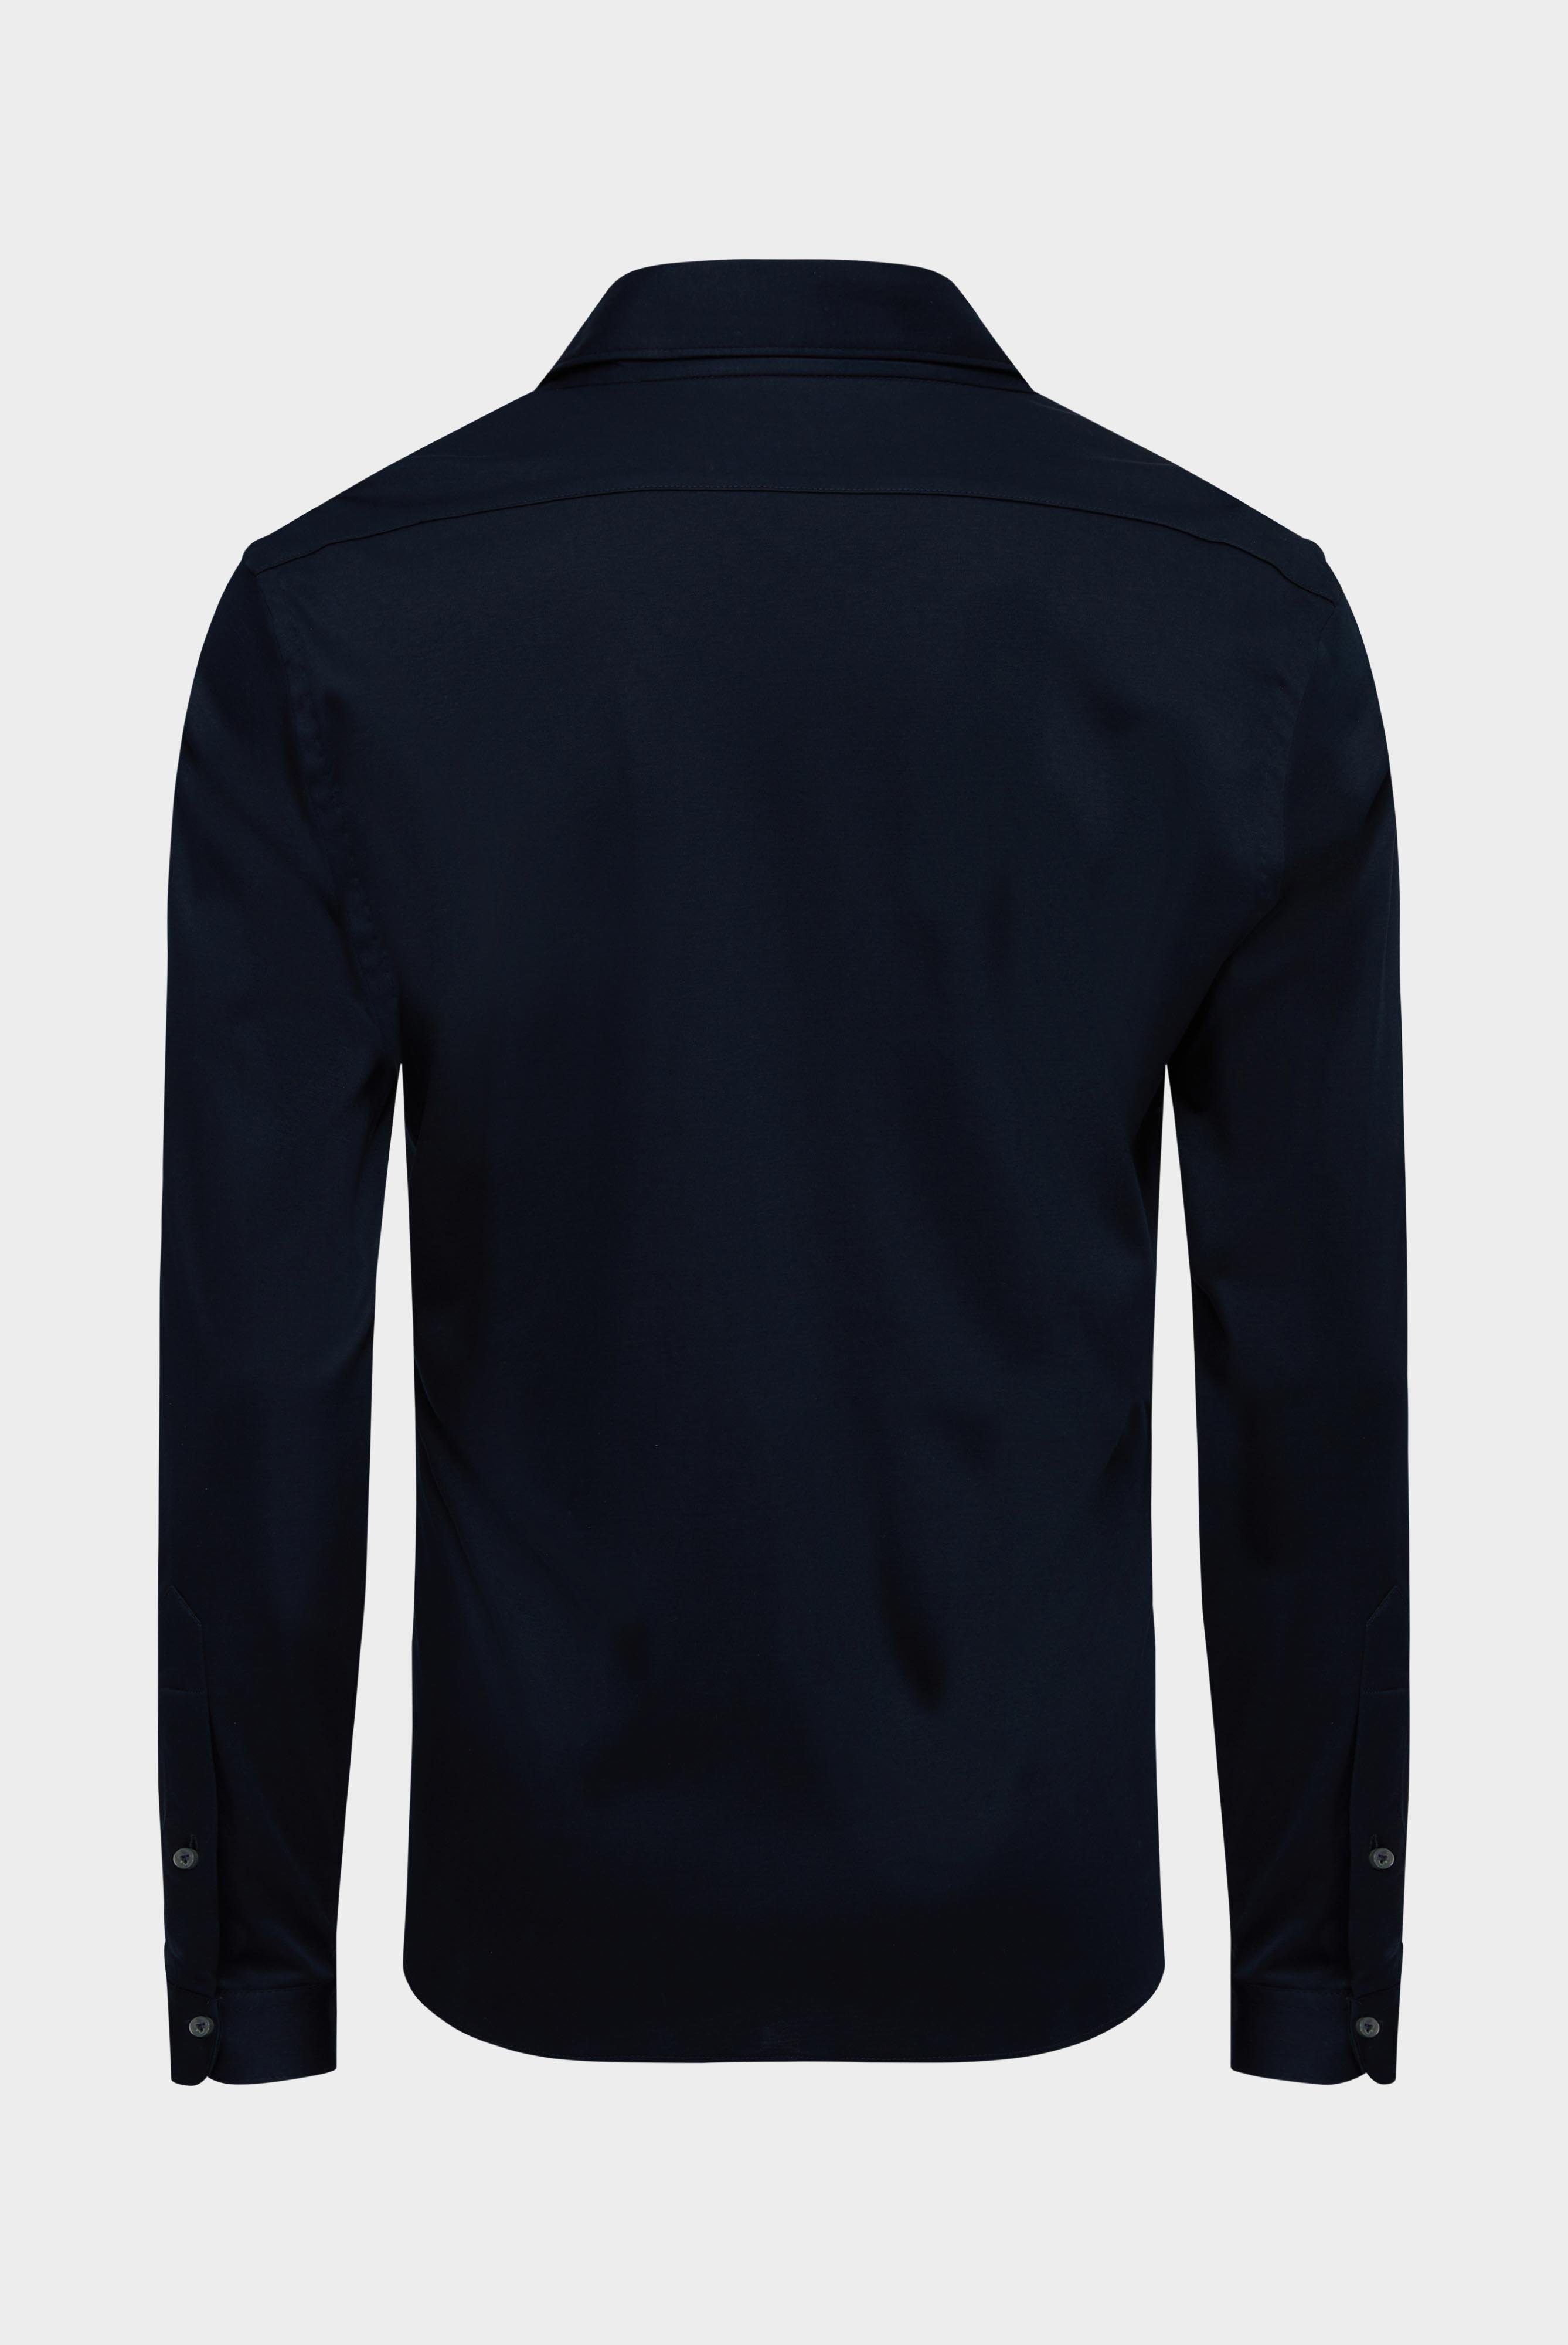 Bügelleichte Hemden+Jersey Hemd mit glänzender Optik Tailor Fit+20.1683.UC.180031.790.S